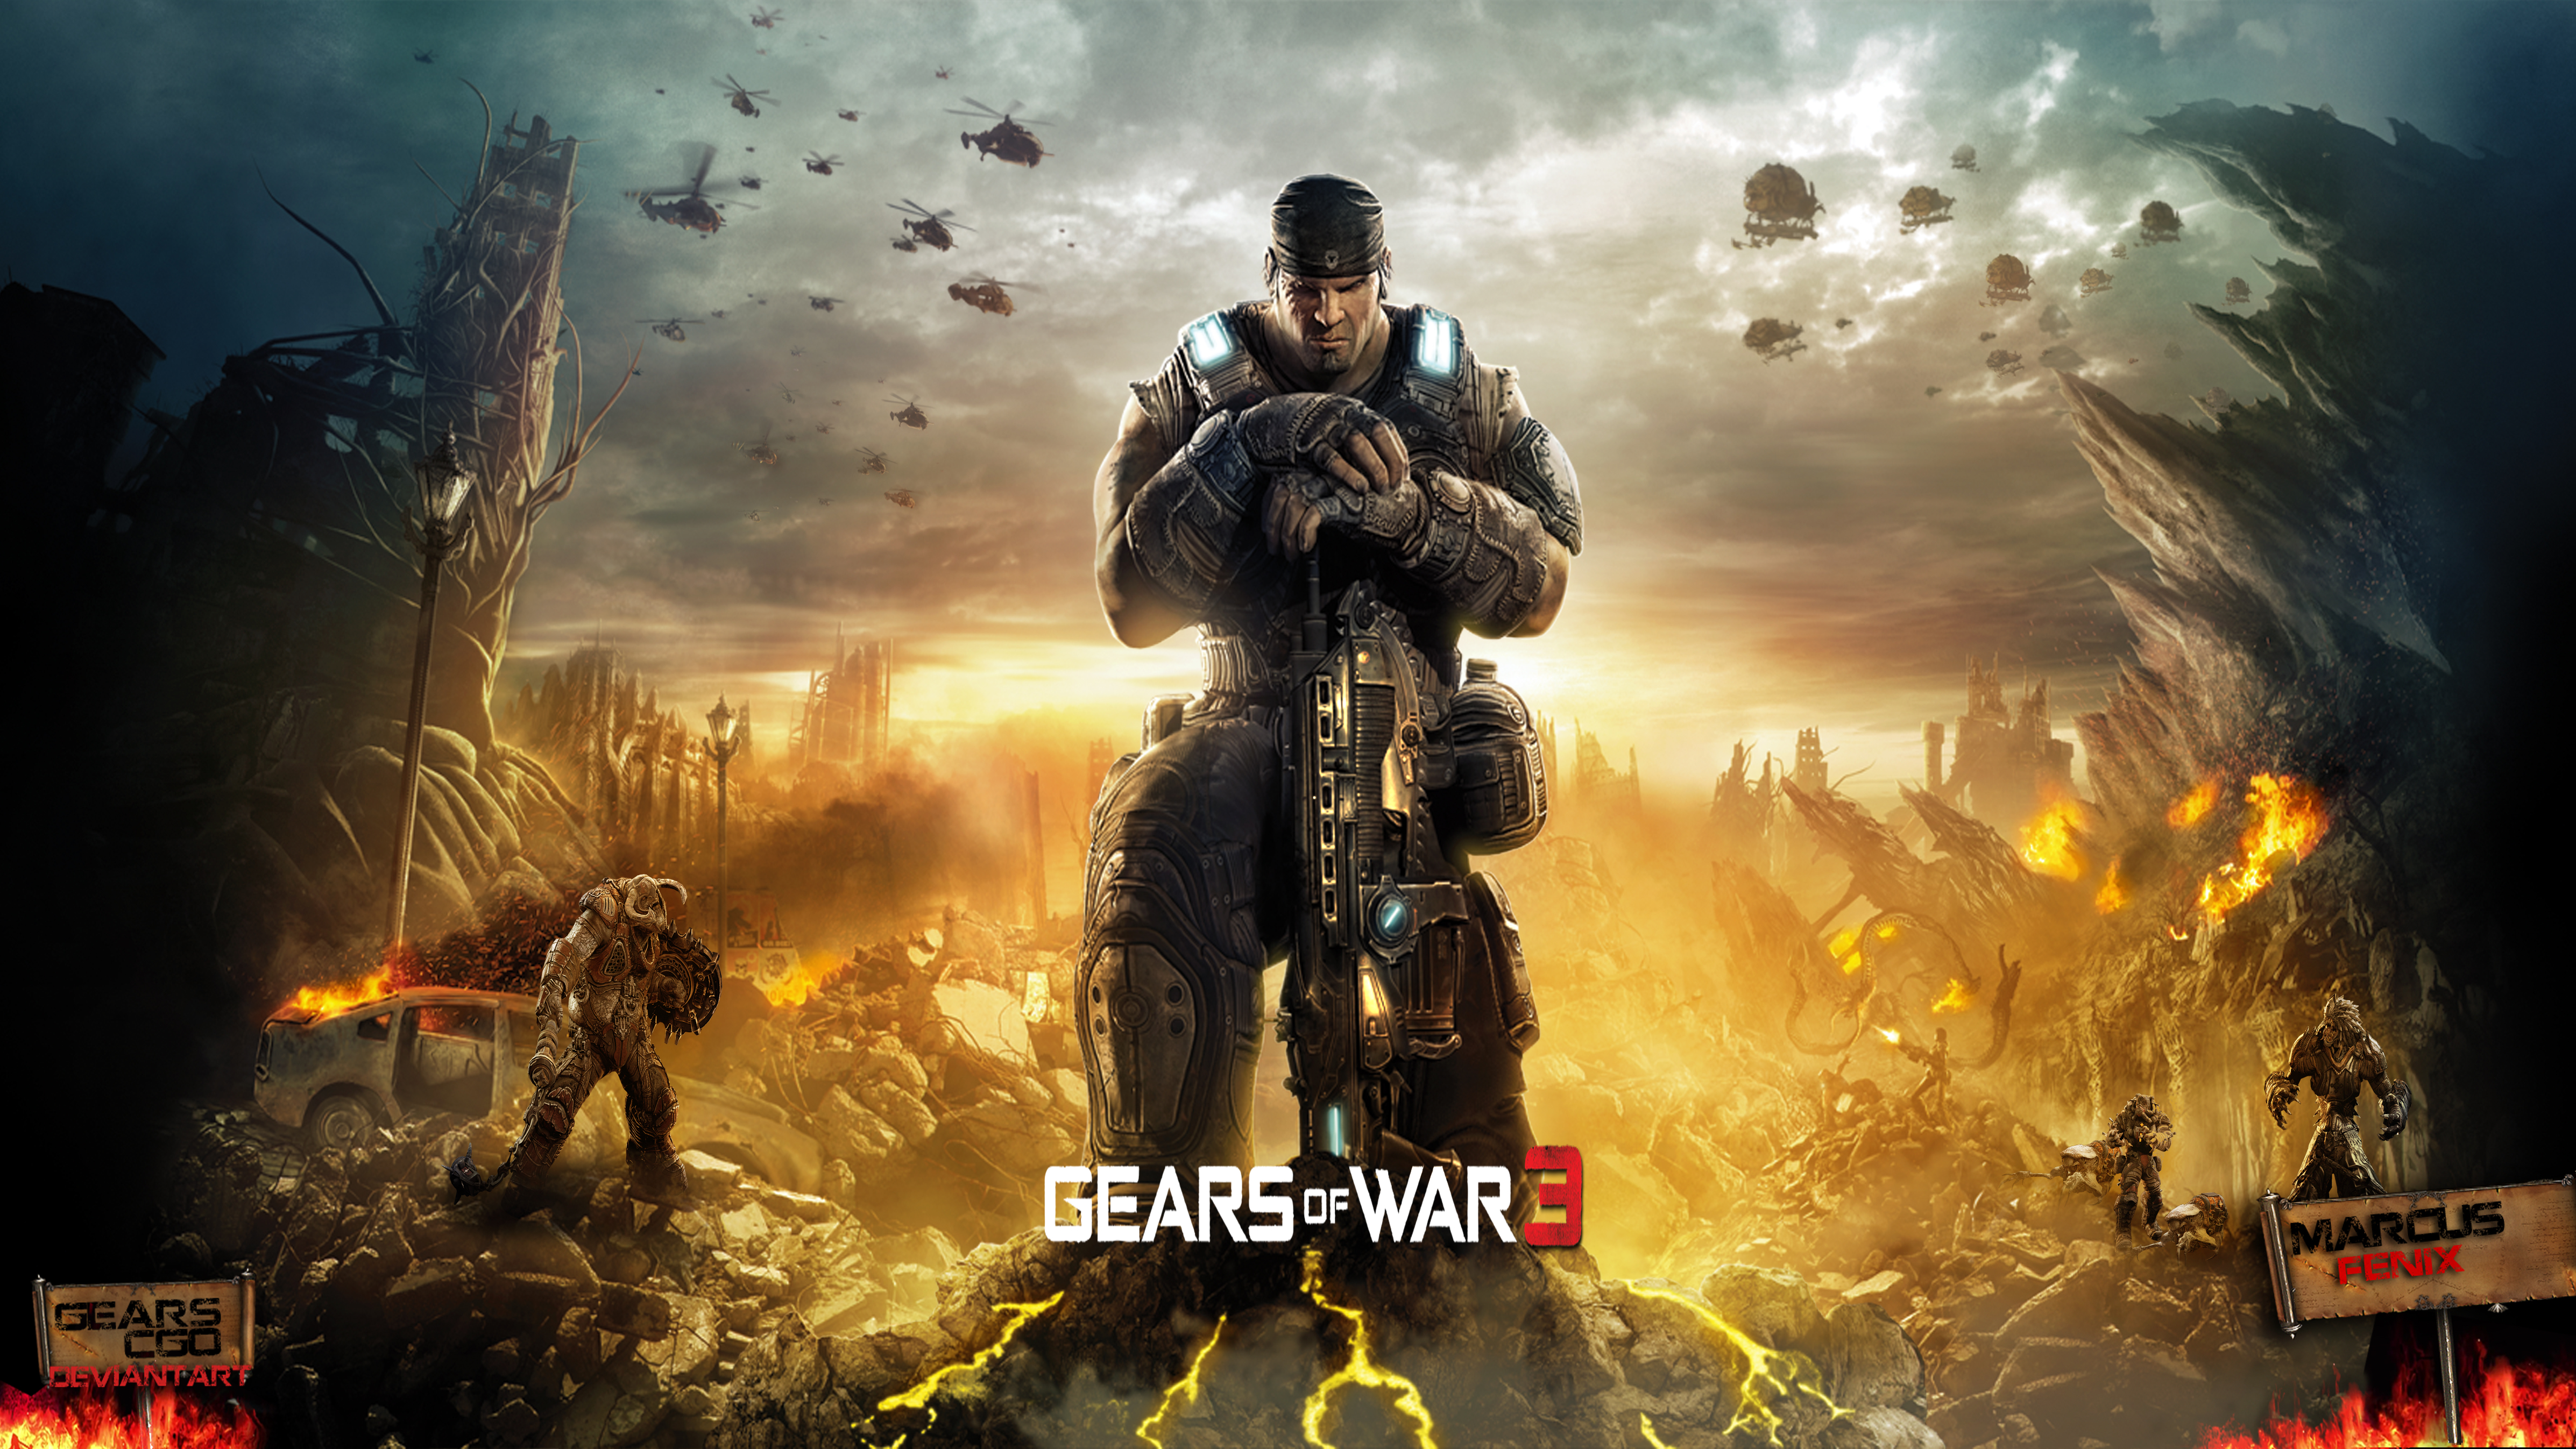 Gears Of War 3 - wallpaper by GearsCgo on DeviantArt